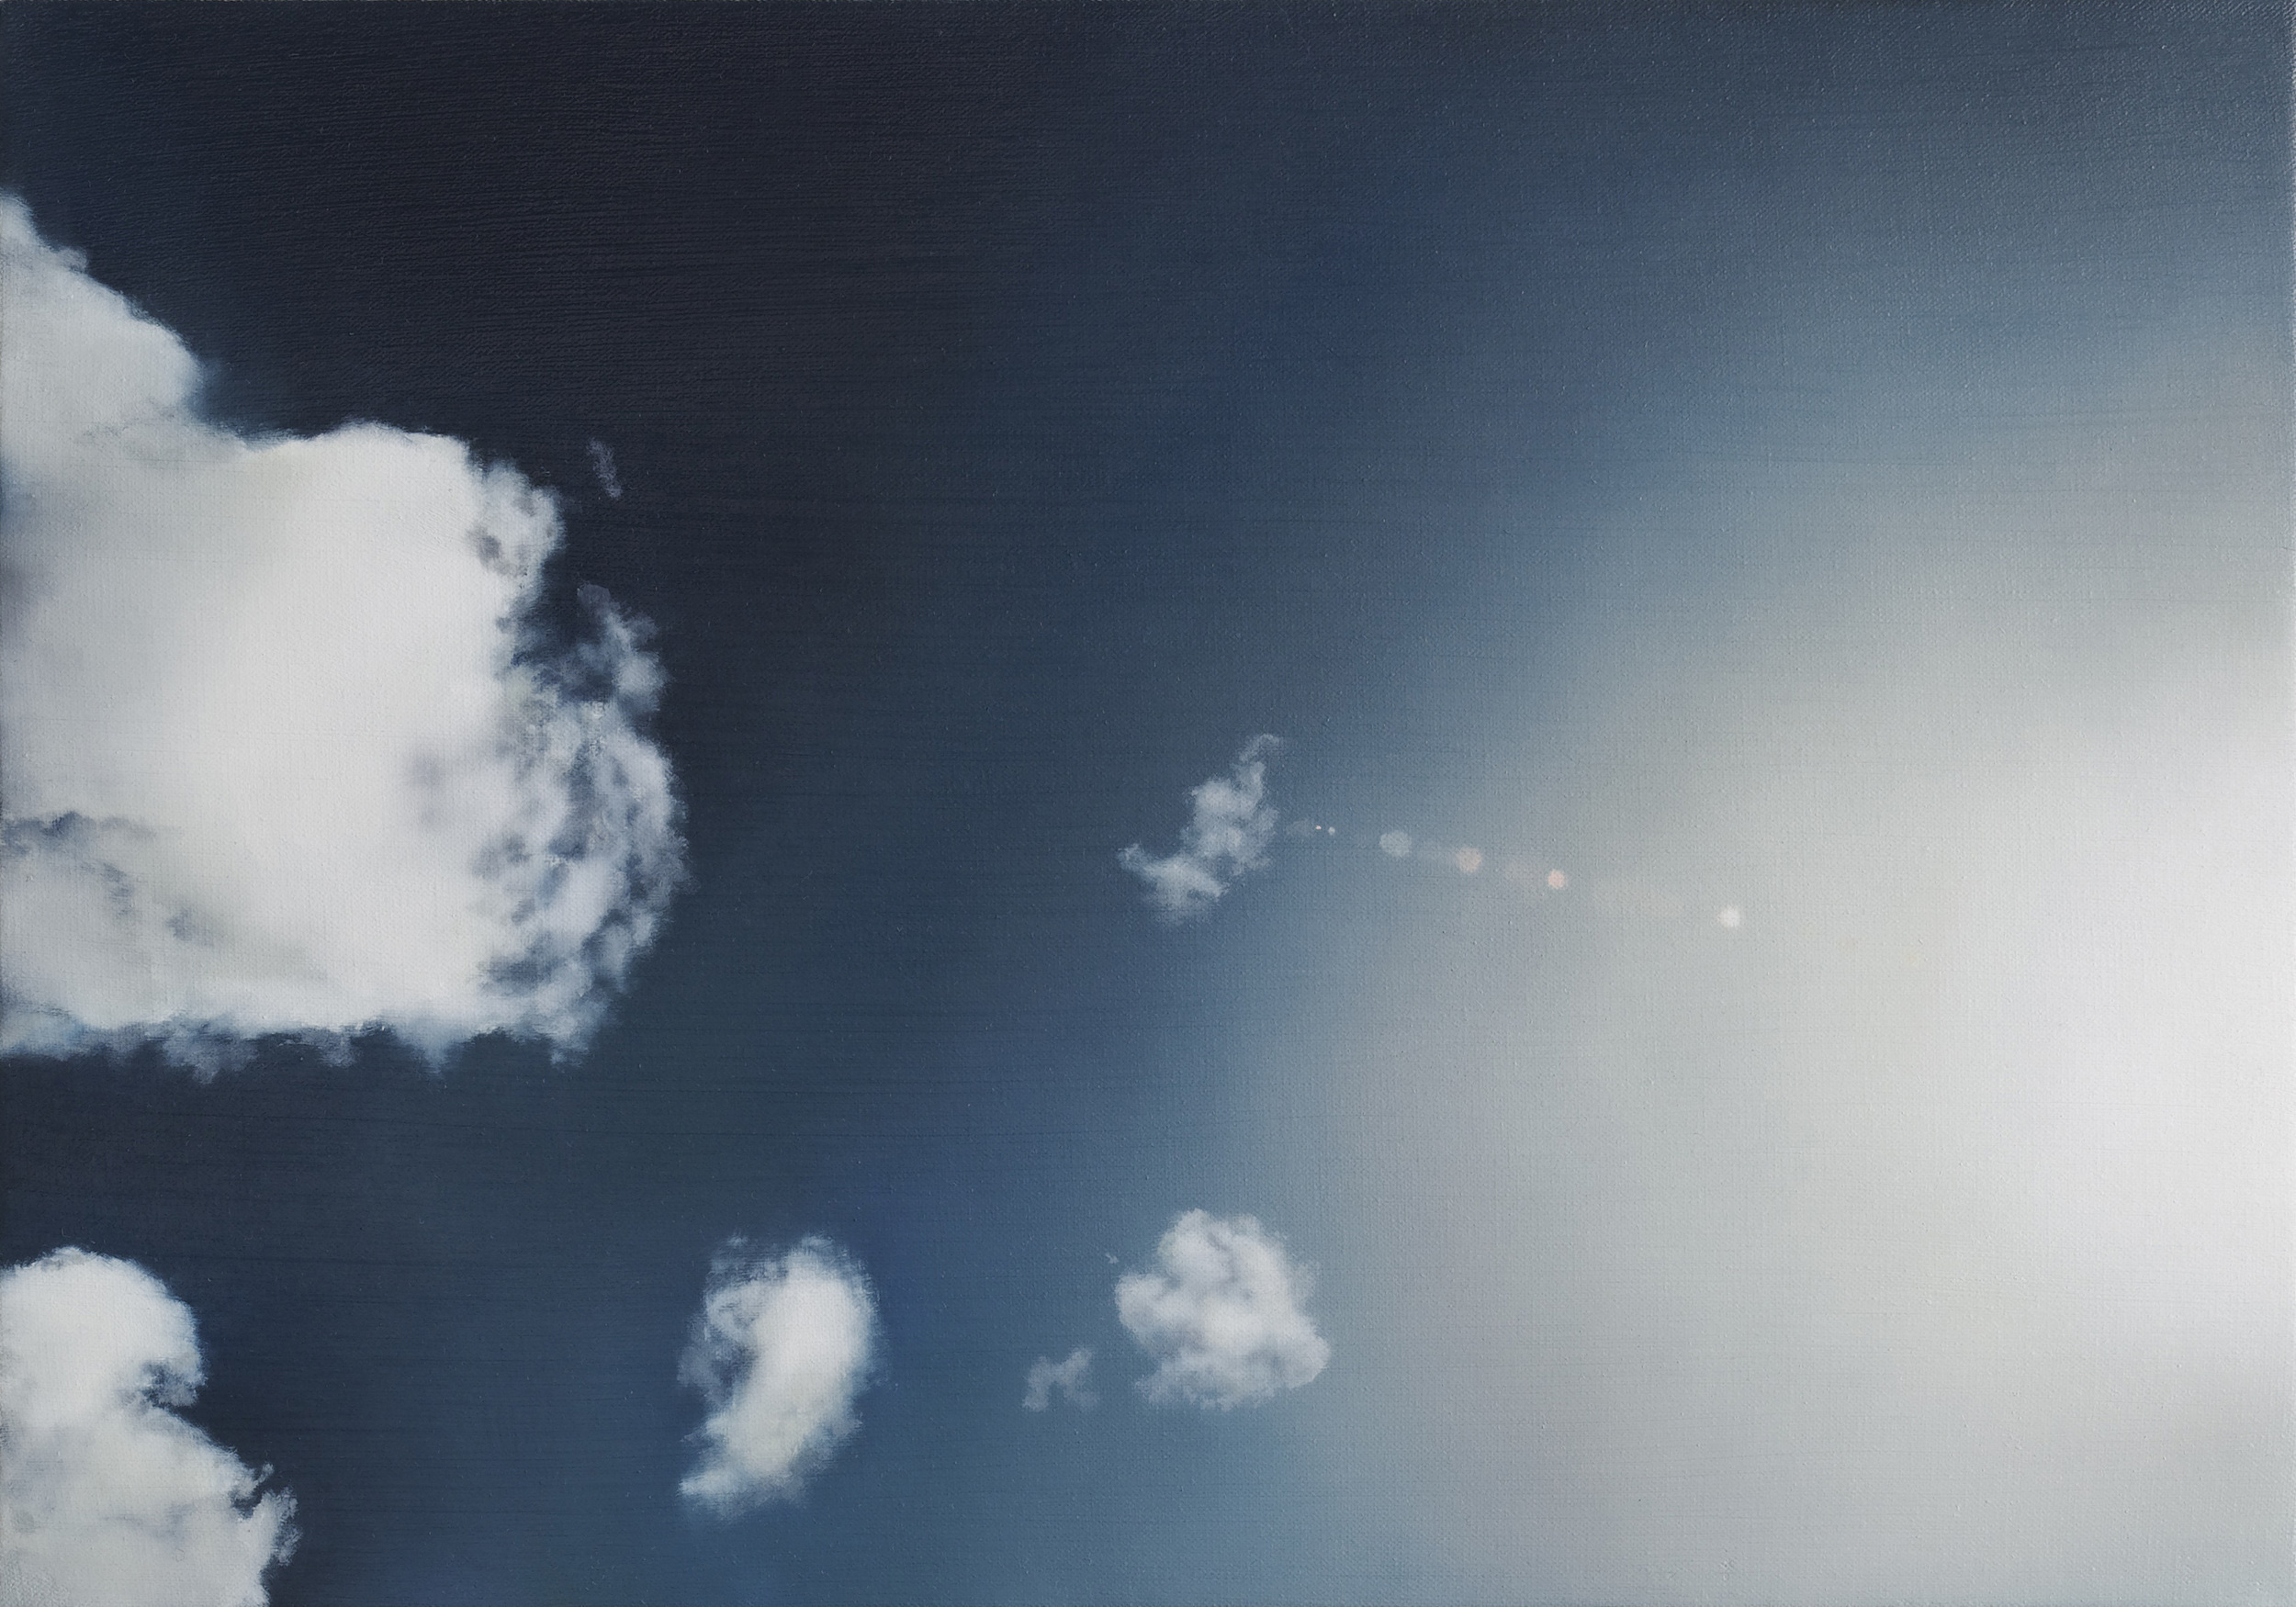   clouds 2&nbsp;&nbsp; •  14" x 20"  oil on canvas  2010    